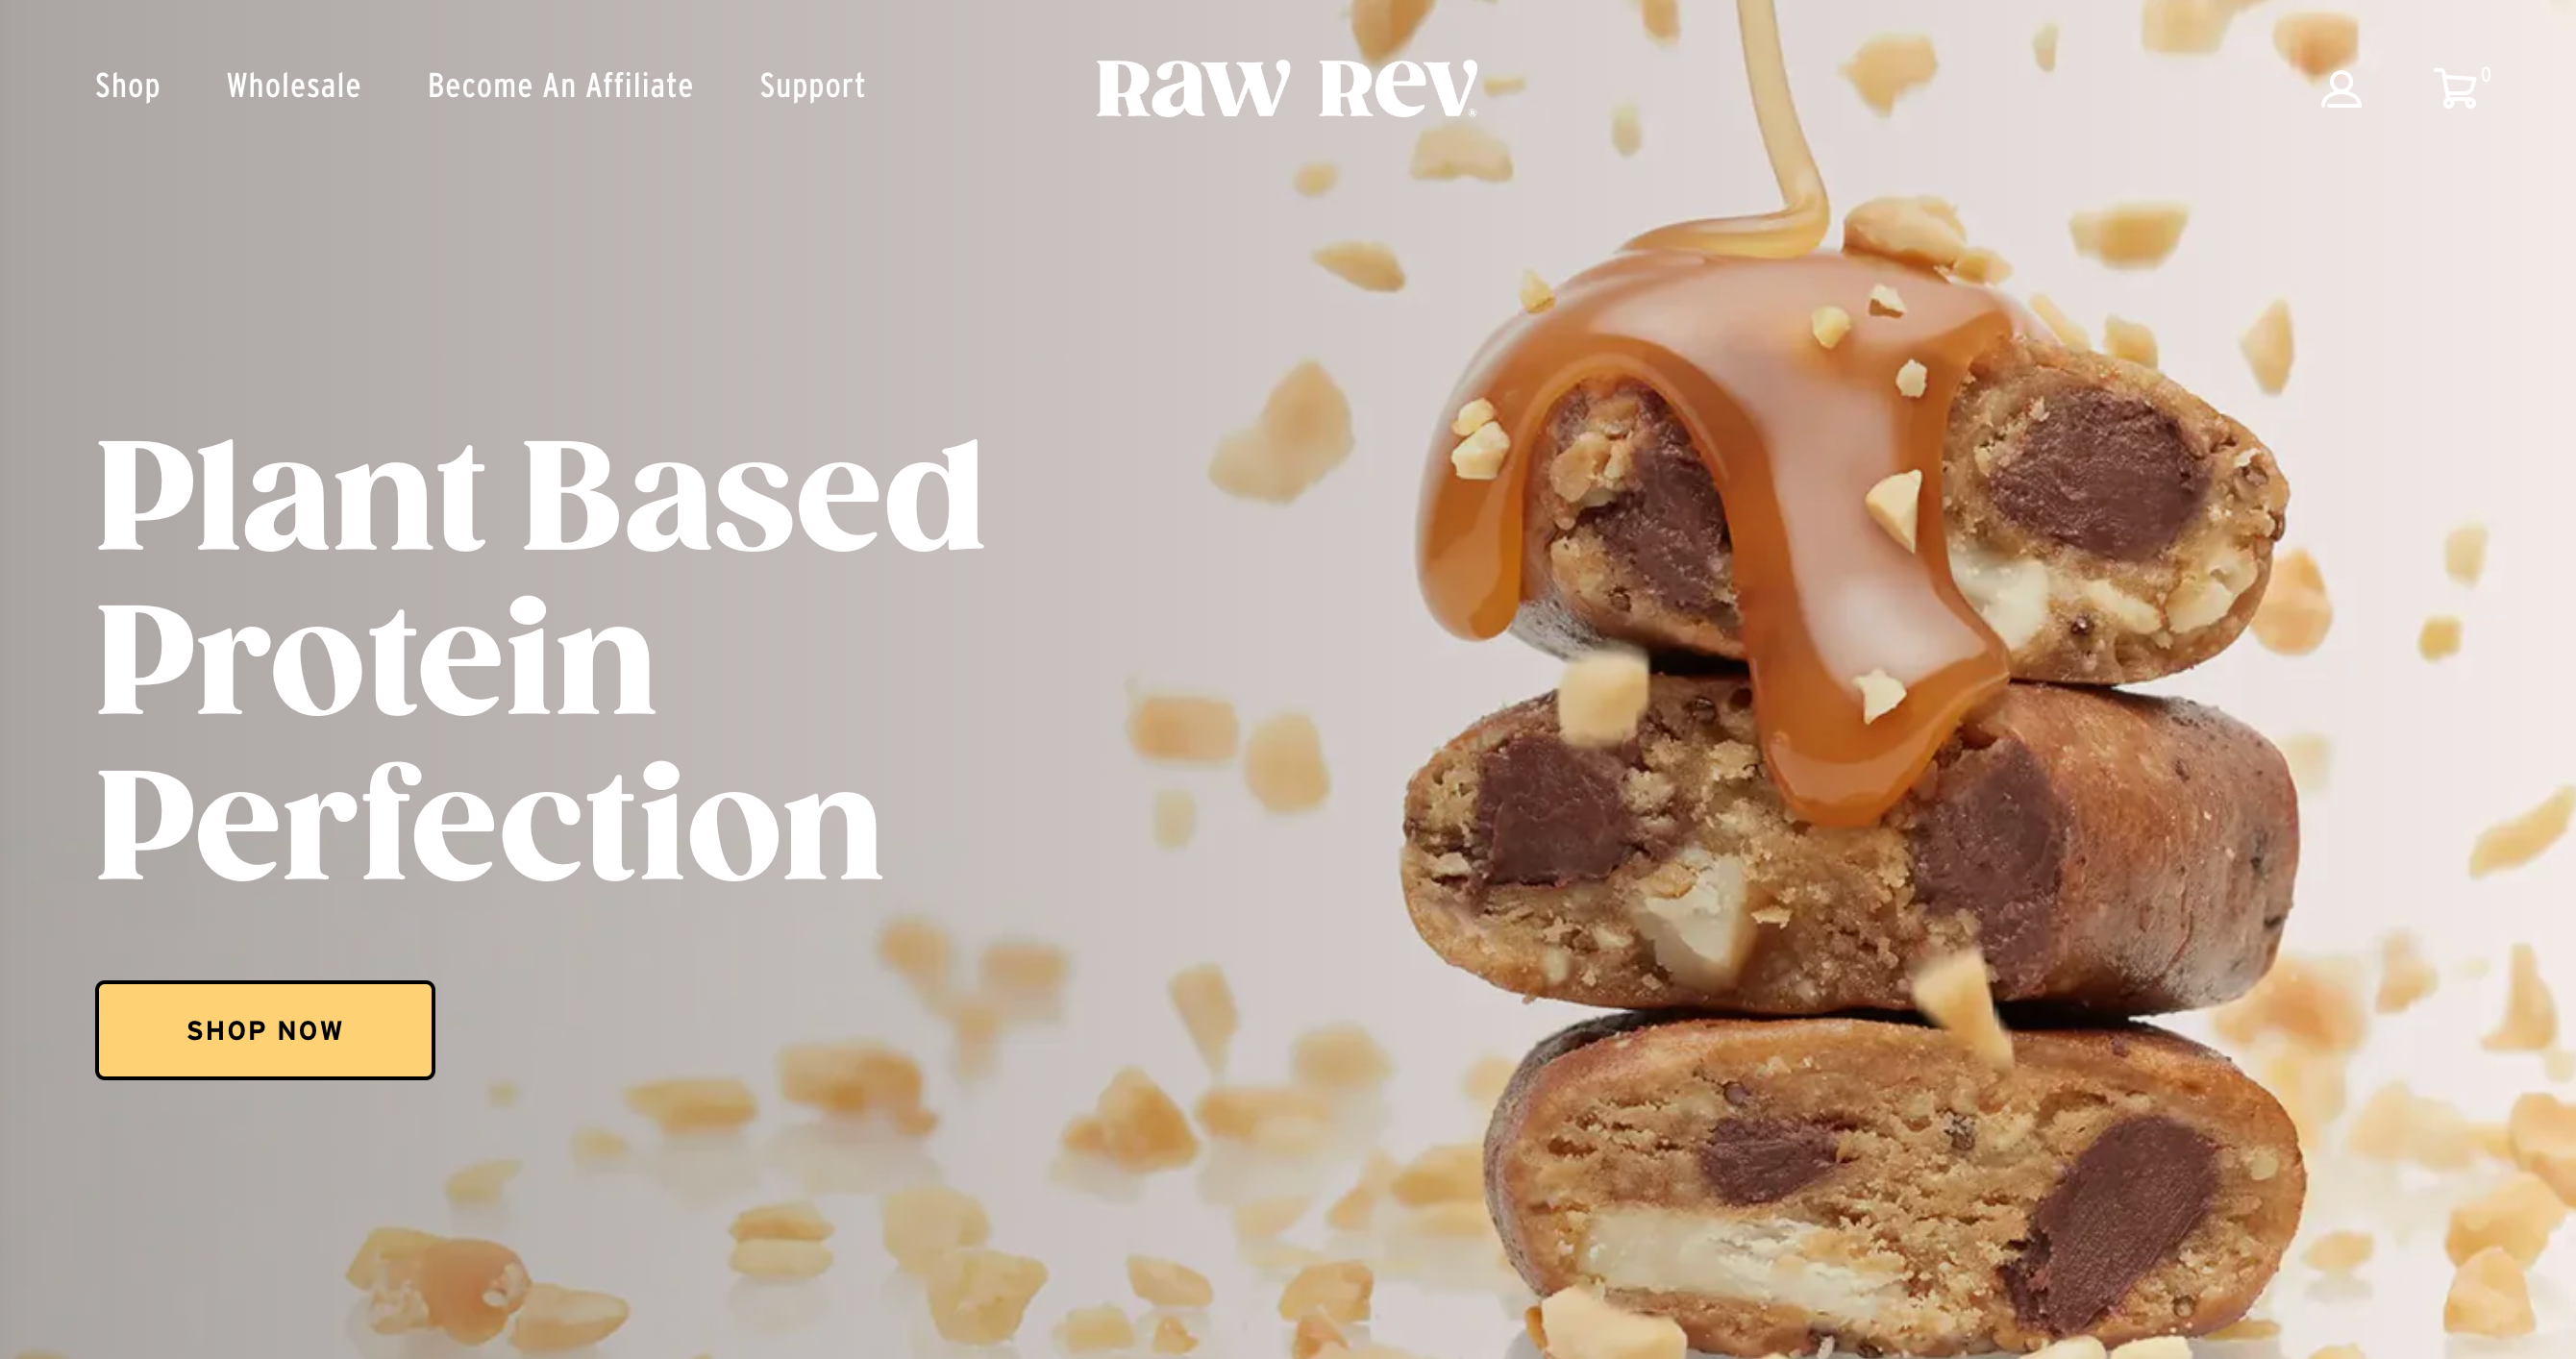 rawrev.com